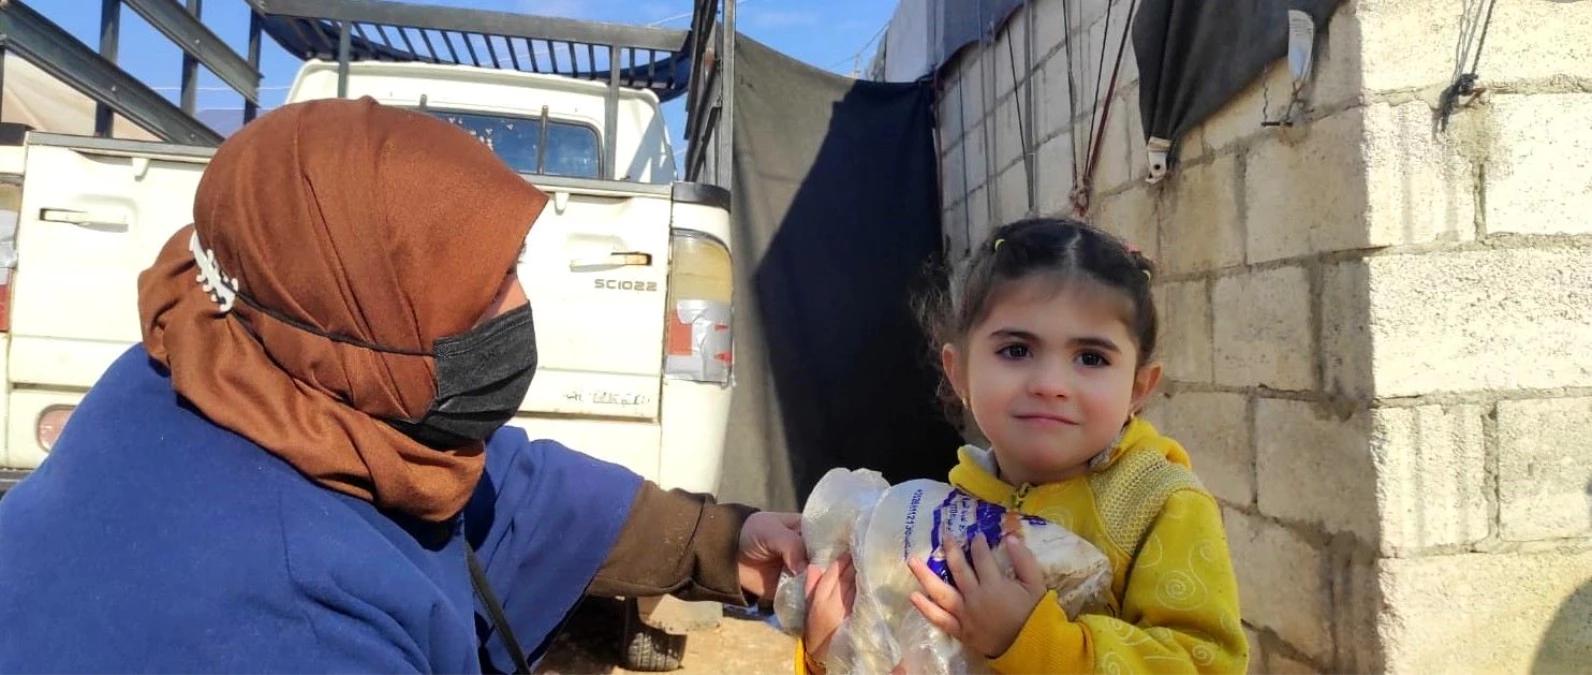 Afrin şehidinin maaşının bir kısmını bağışladığı dernekten İdlib\'e yardımZorlu kış şartlarıyla mücadele eden bin 200 aileye her gün ekmek dağıtılıyor